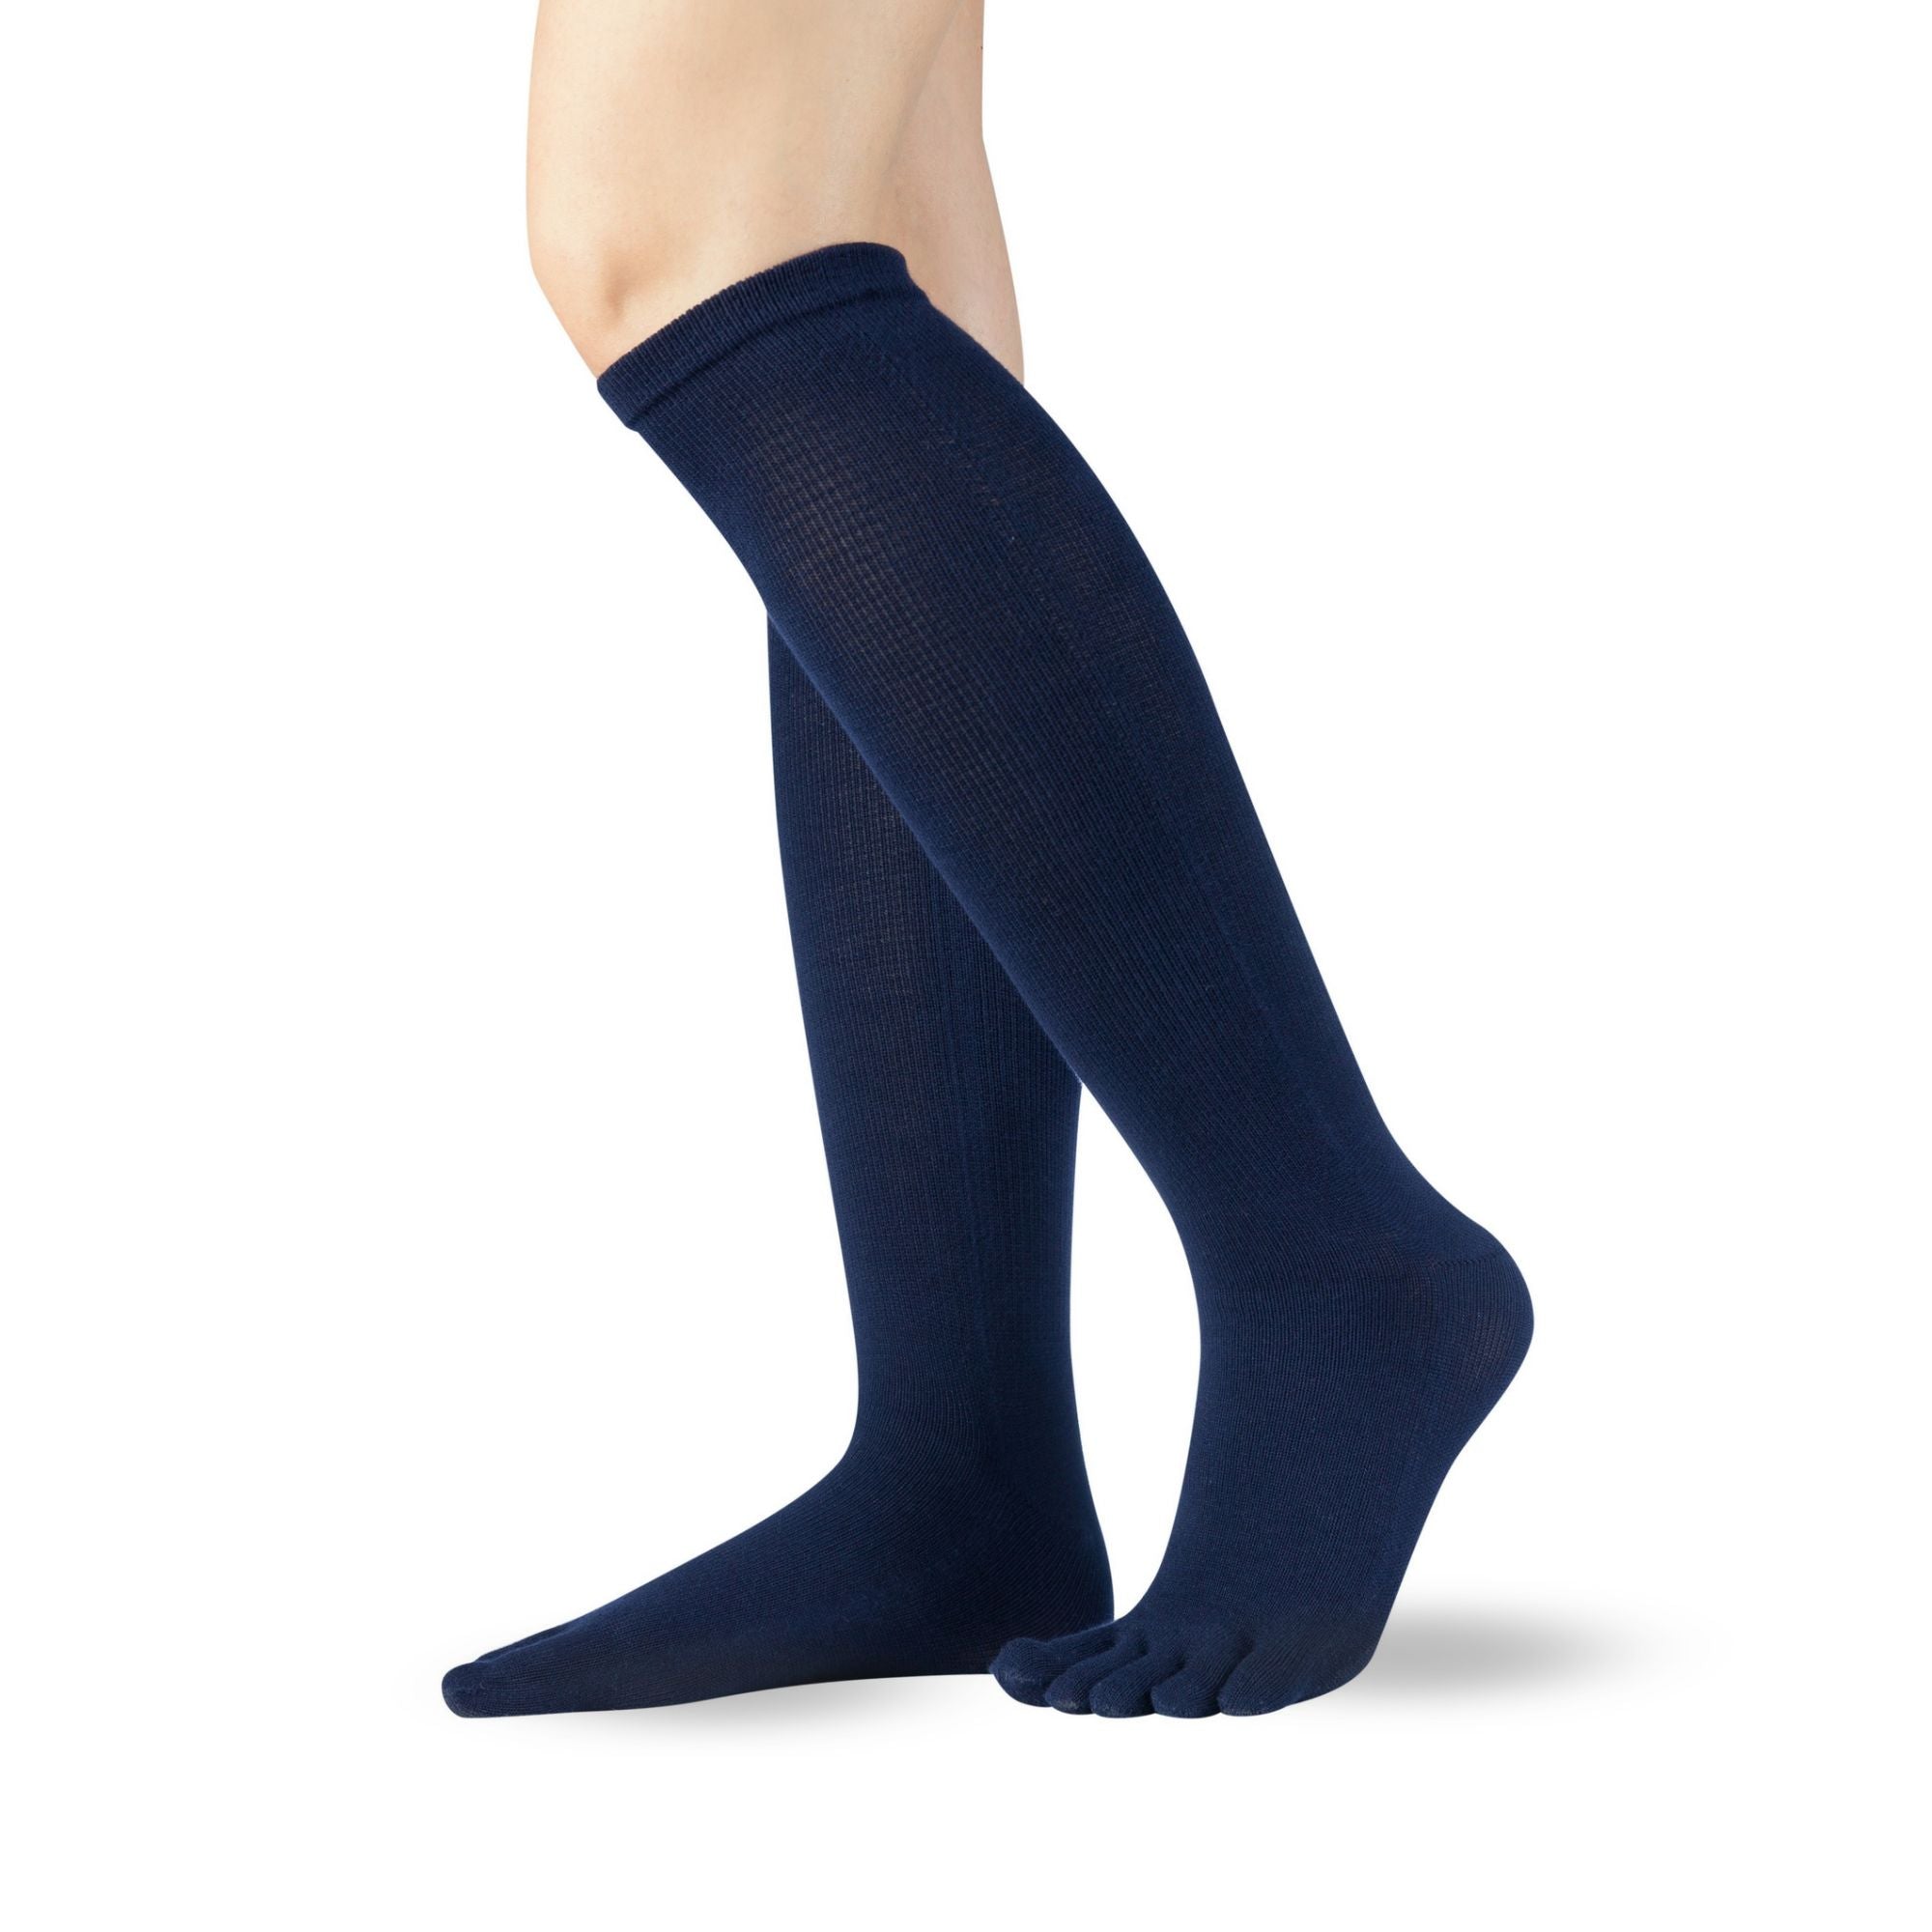 Knitido Essentials Chaussettes pour orteils (coton) longueur au genou par le côté en marine